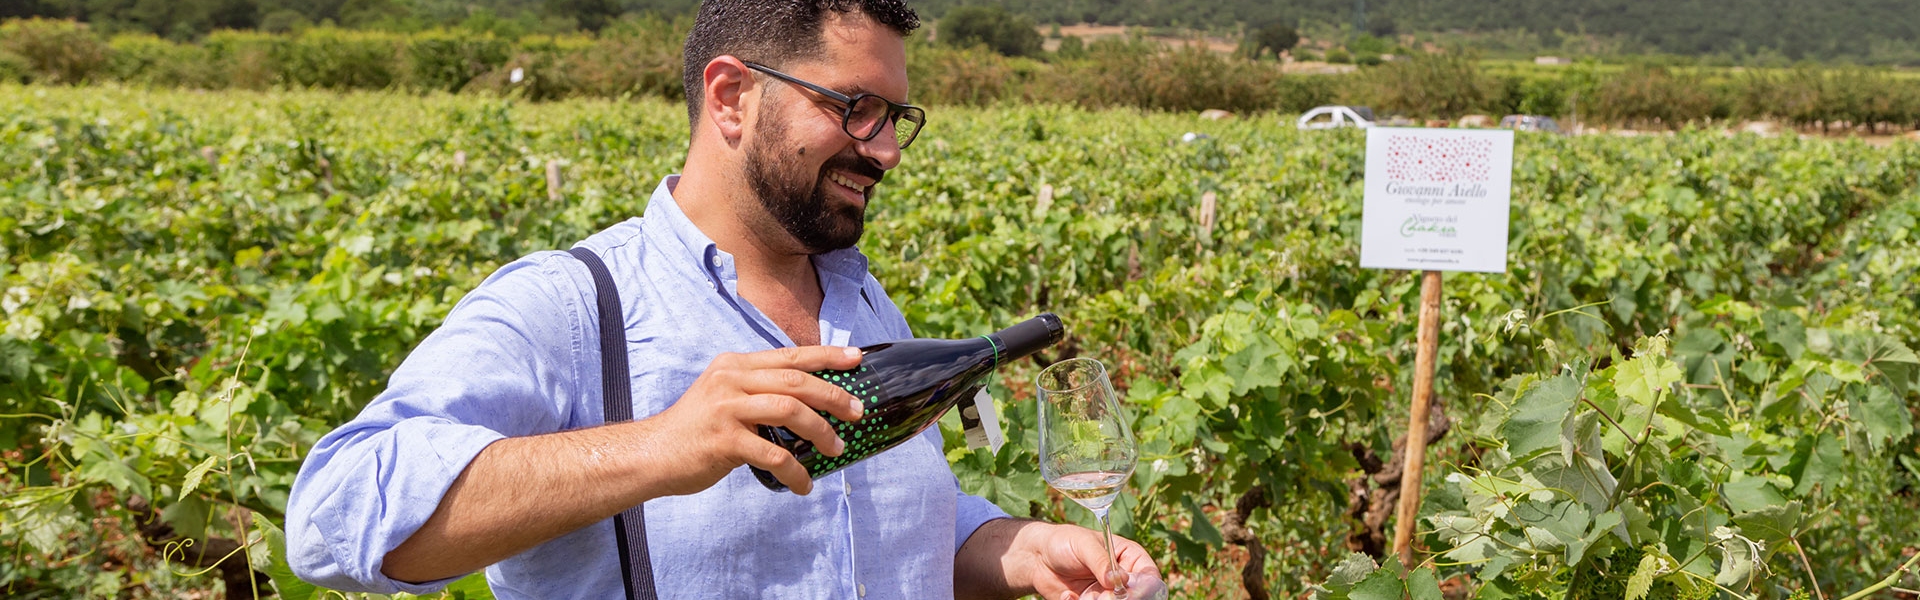 GIovanni Aiello versa il vino Chakra Verde nei suoi vitigni in Puglia